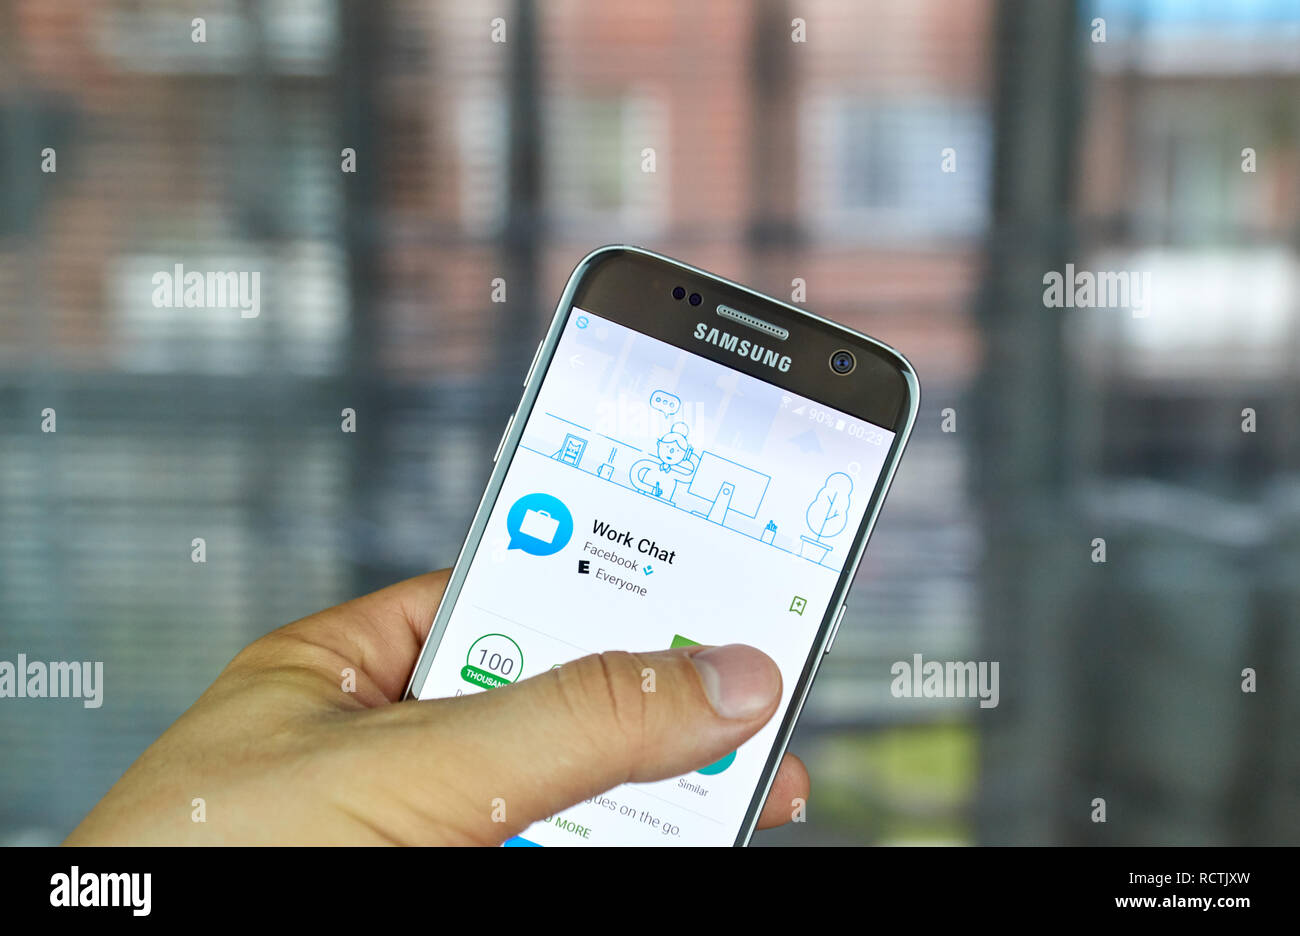 MONTREAL, KANADA - 24. JUNI 2016: Facebook Arbeit Chat Anwendung auf Samsung S7-Bildschirm. Arbeit Chat ist der Begleiter von Facebook App für Arbeitsplatz Stockfoto